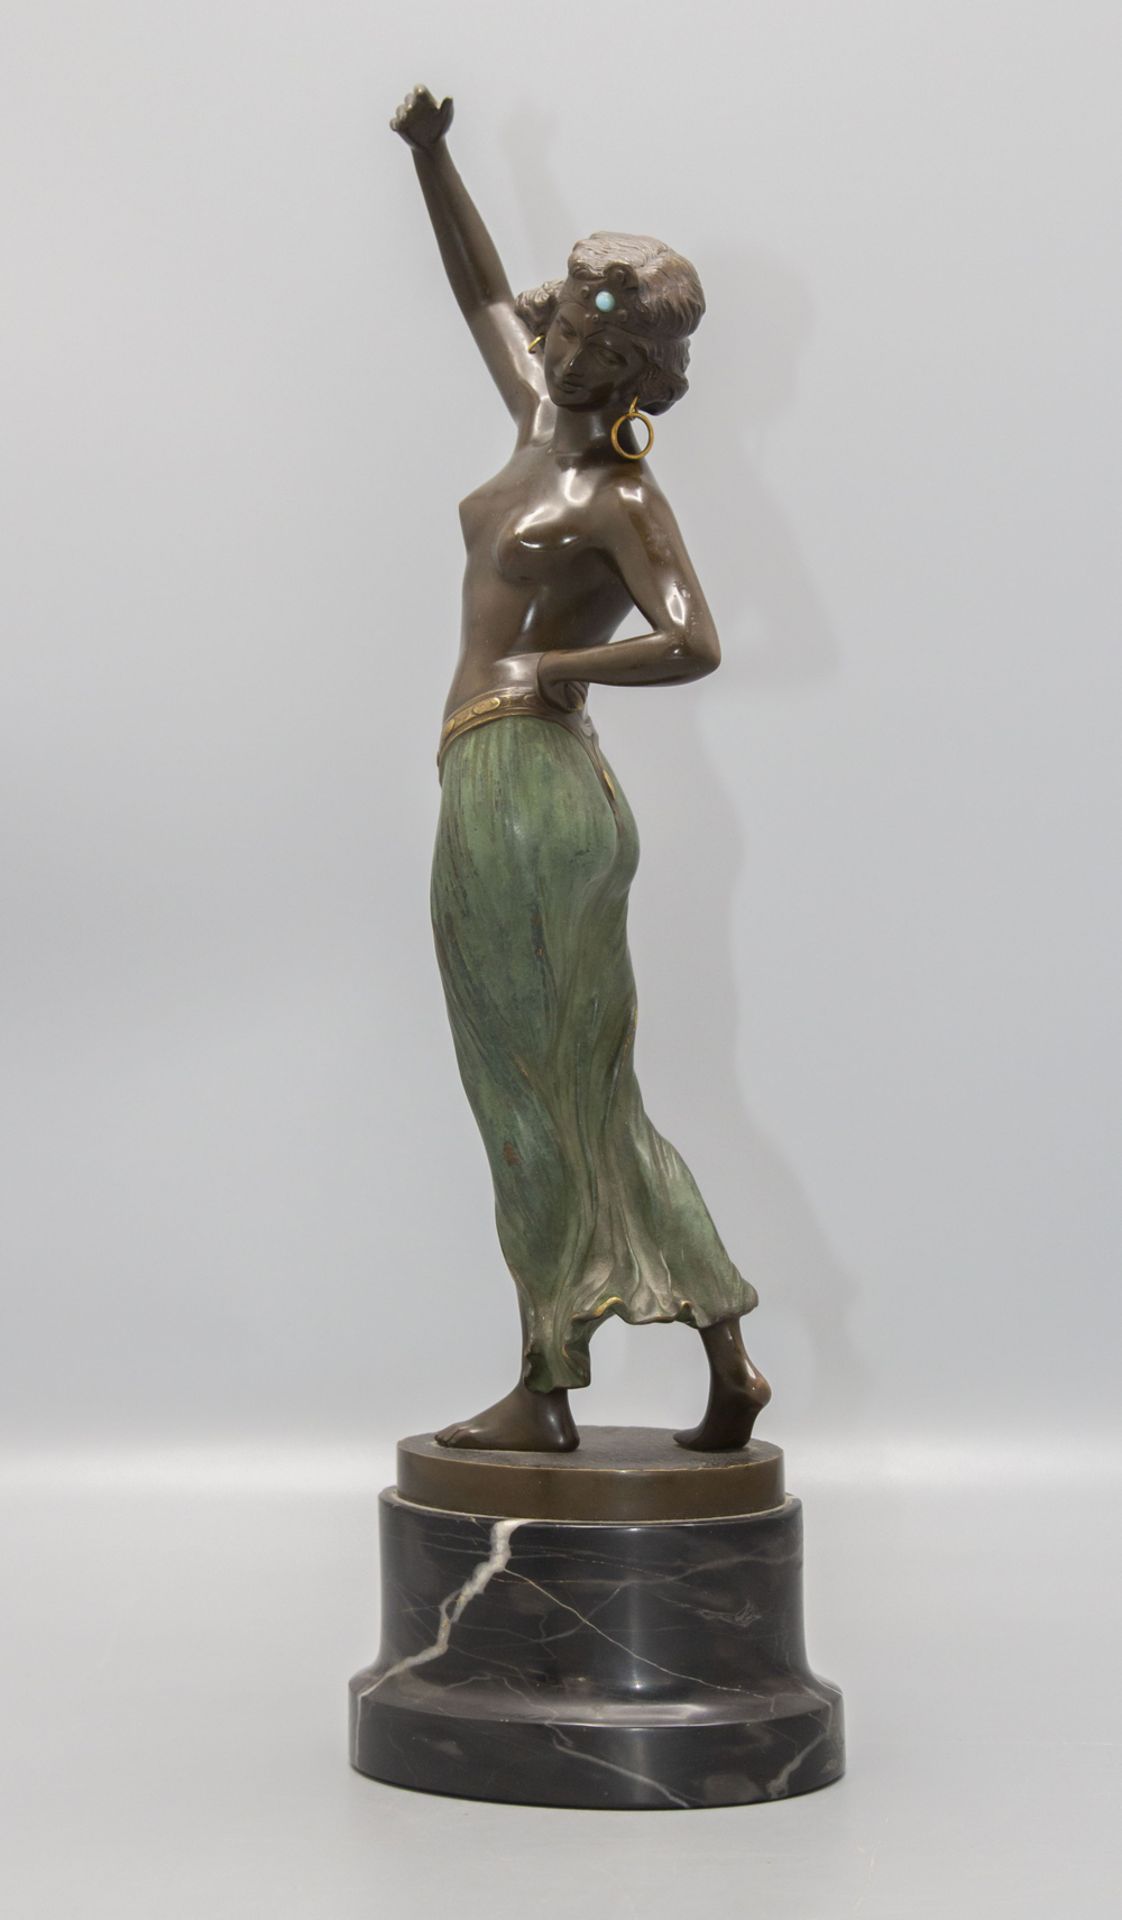 Franz IFFLAND (1862-1935), Bronzeplastik 'Odaliske' / A bronze sculpture 'Odalisque', um 1920 - Image 2 of 5